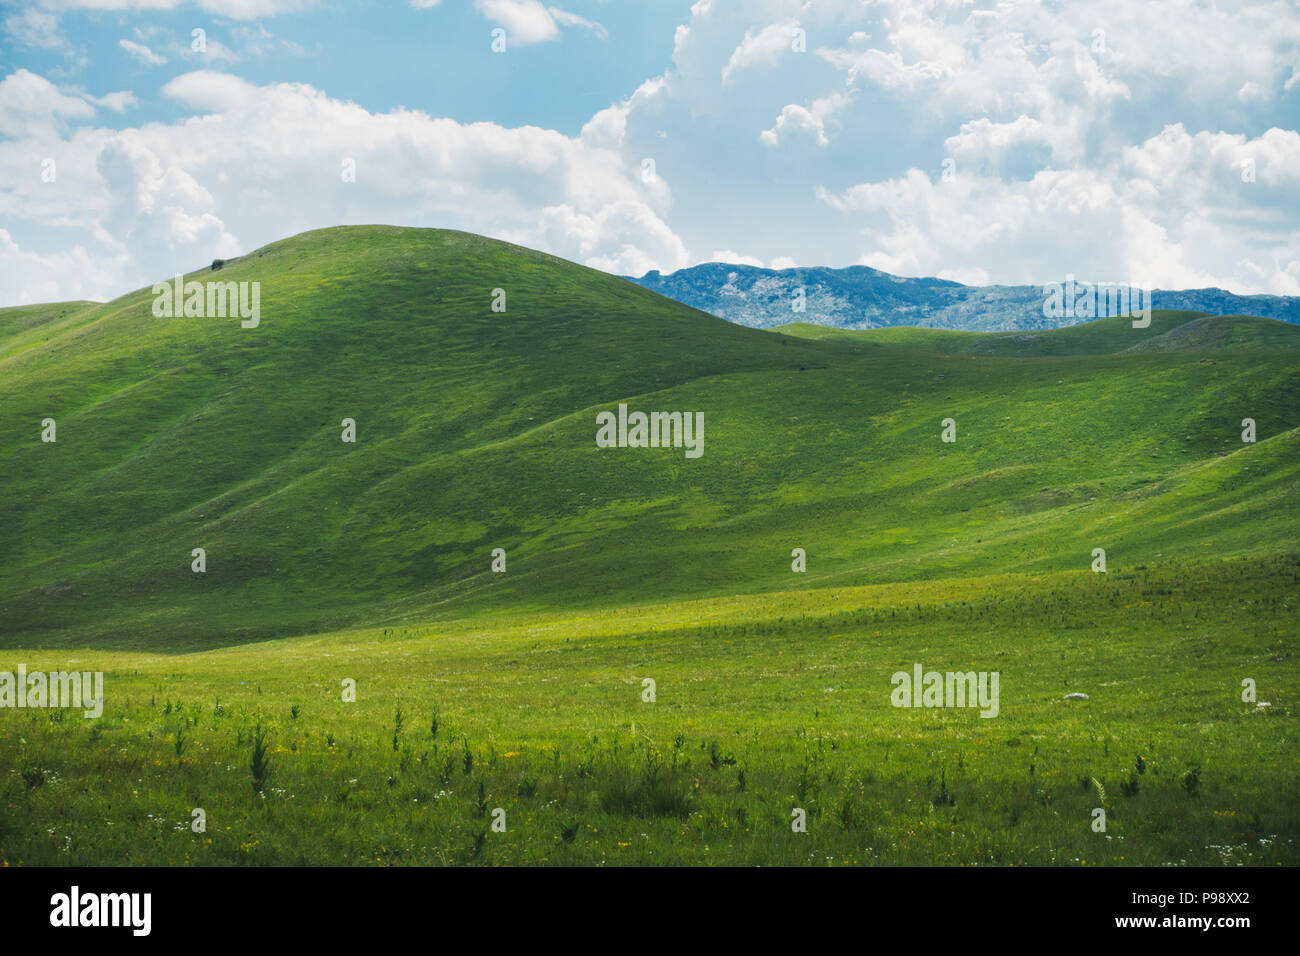 Windows xp wallpaper fotografías e imágenes de alta resolución - Alamy